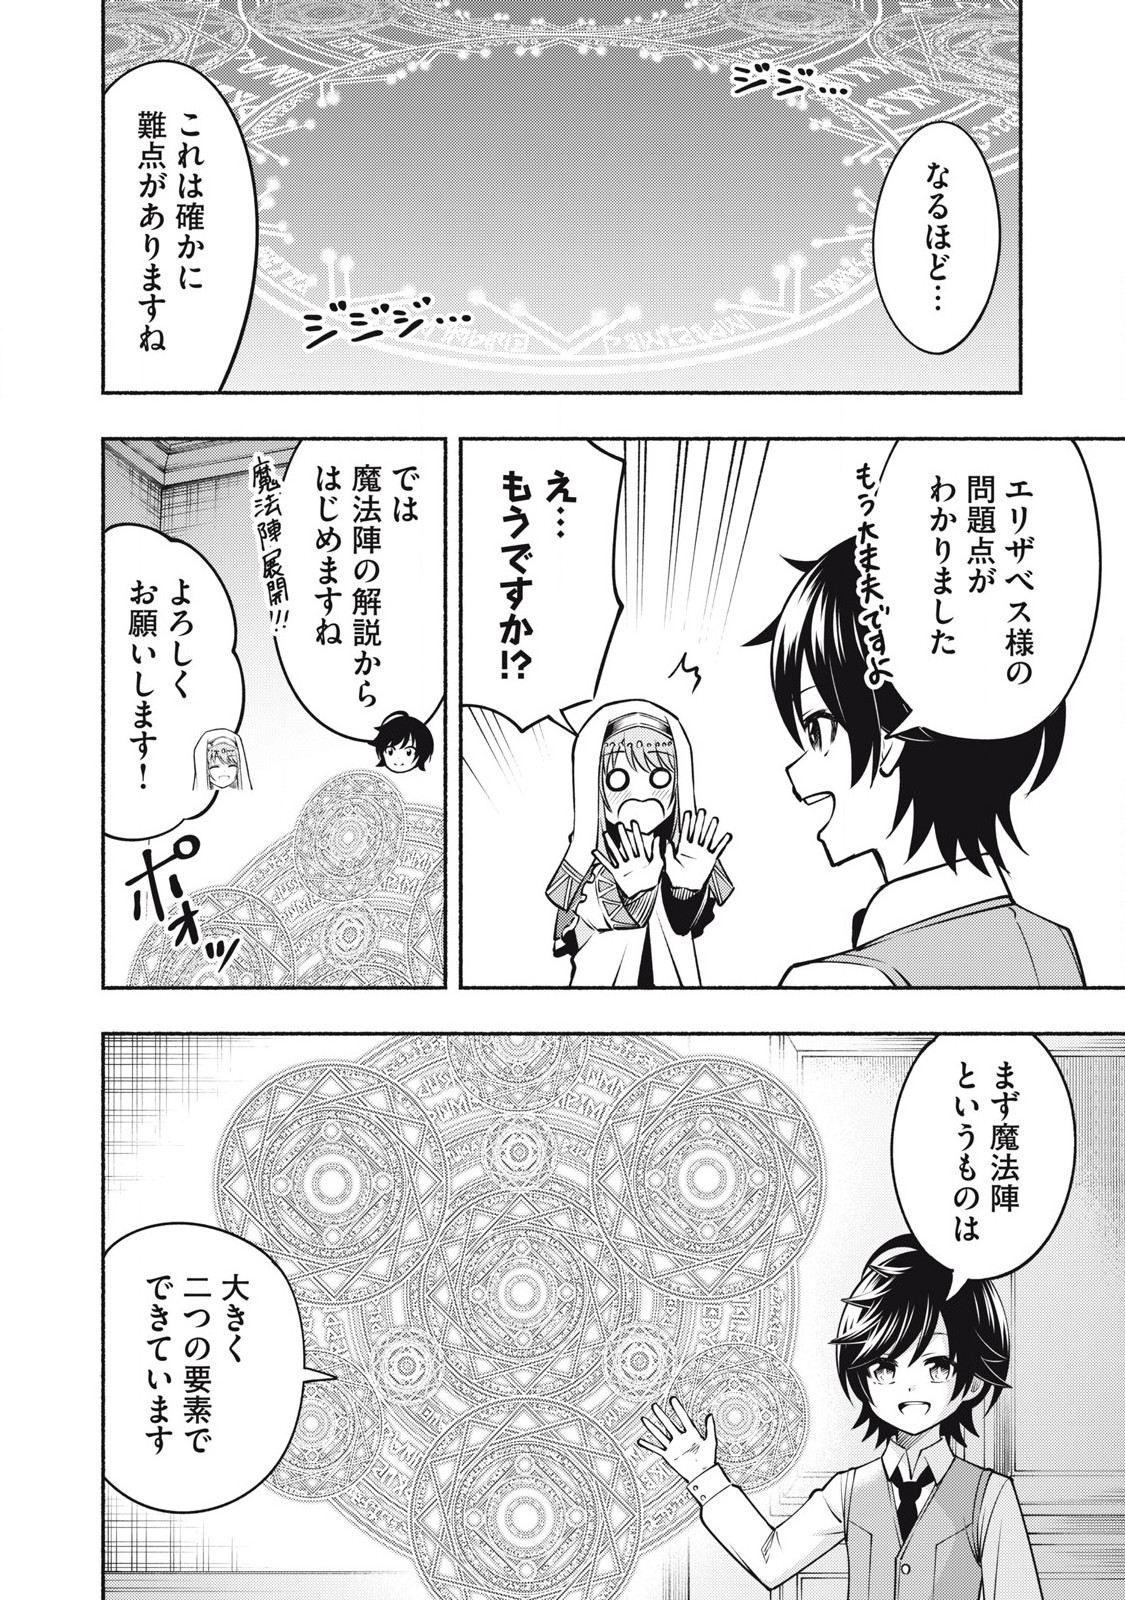 Yama ni Suterareta Ore, Tokage no Youshi ni Naru - Chapter 9.2 - Page 2